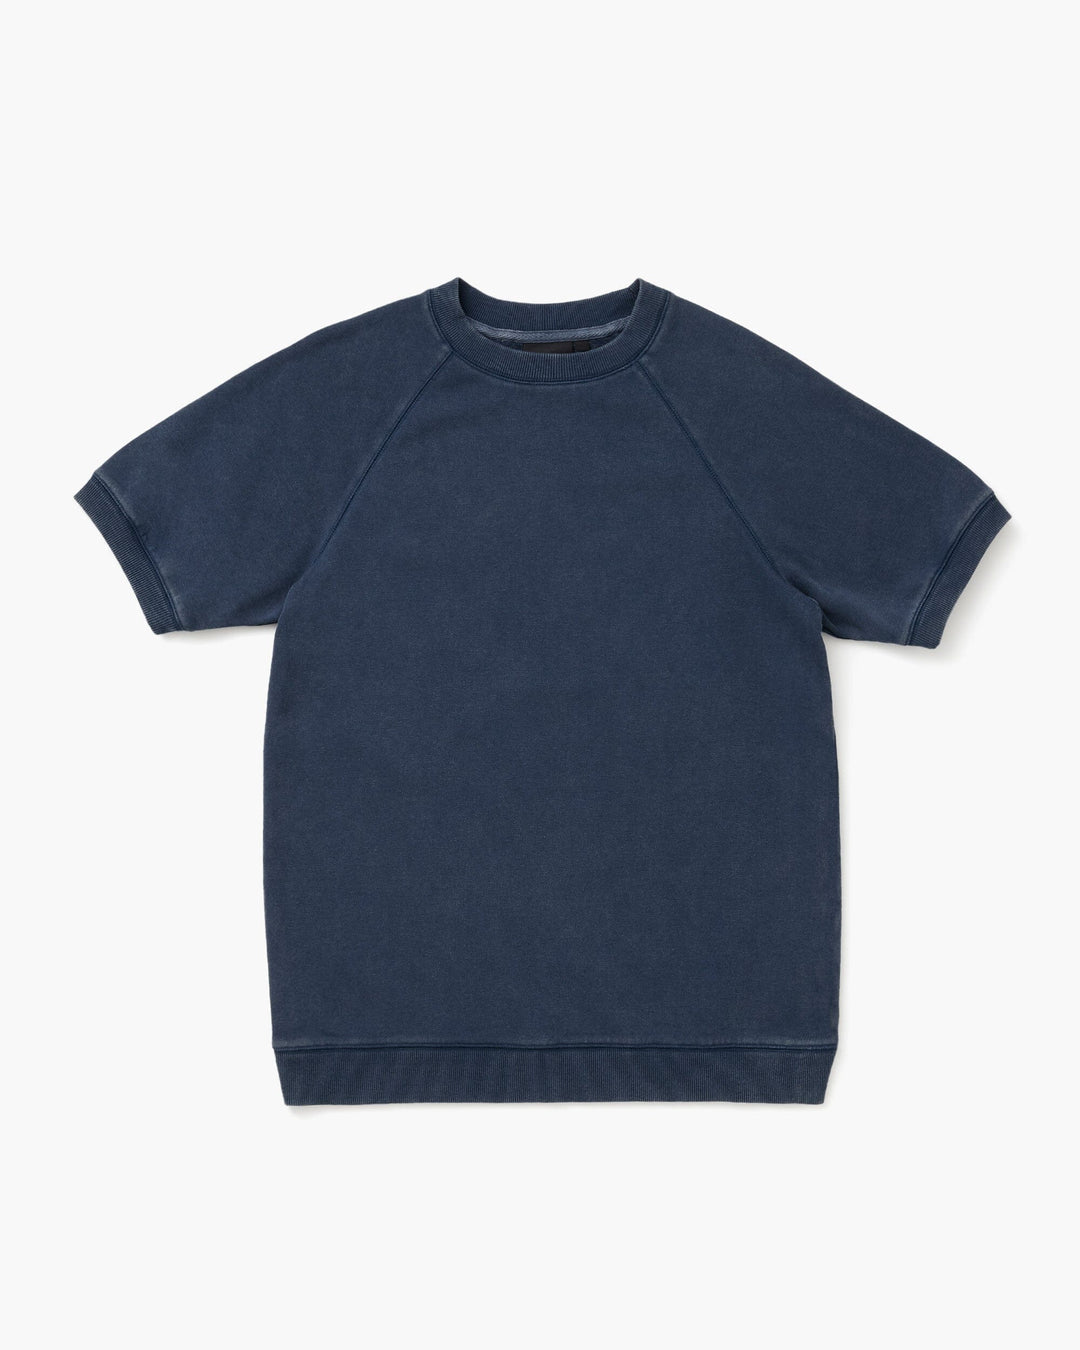 Recycled Fleece Raglan Sweatshirt- Blue Nights